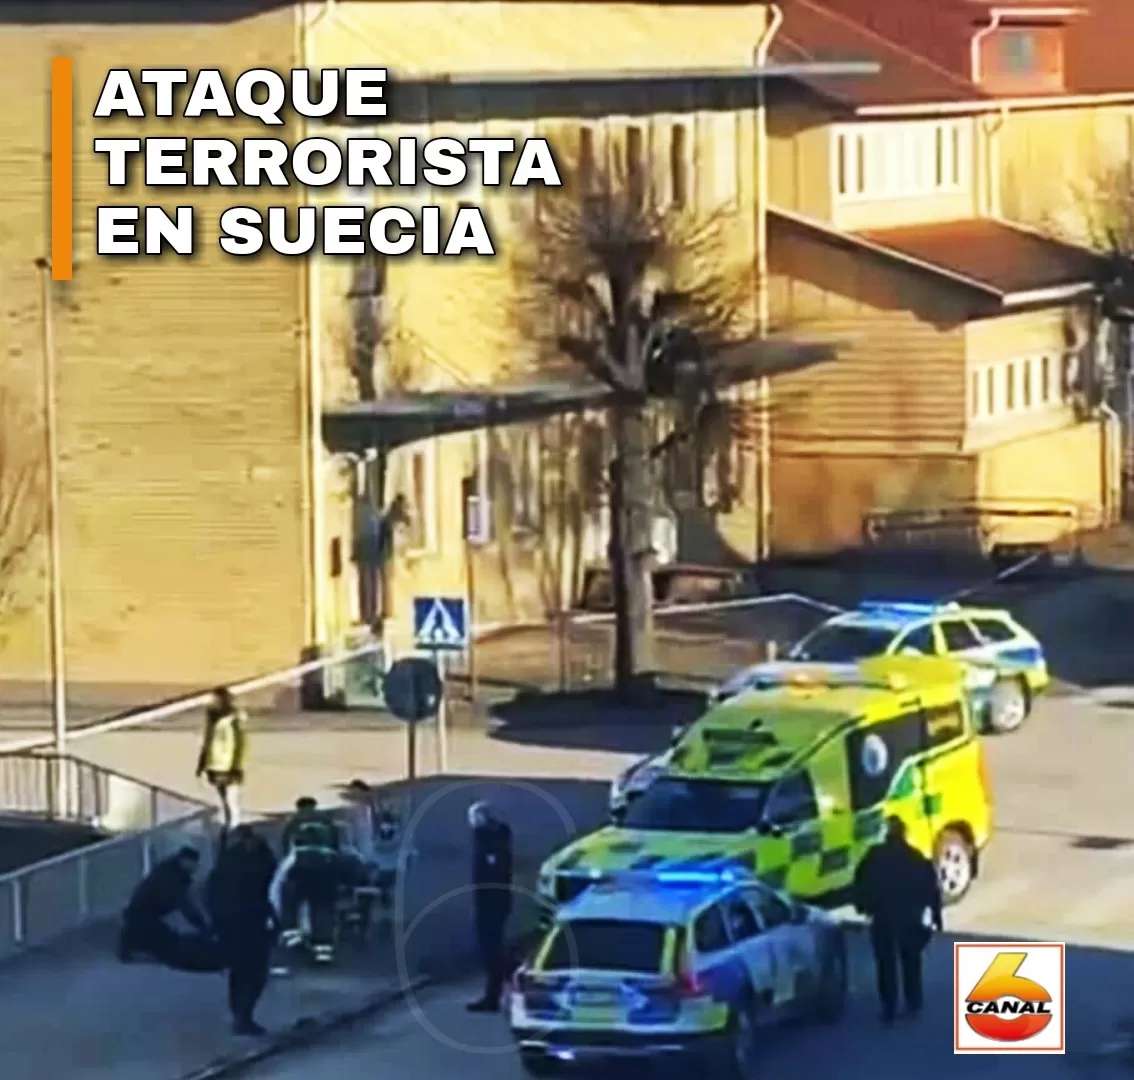 #SUECIA 8 personas fueron atacadas a cuchilladas por un individuo en la ciudad de Vetlanda